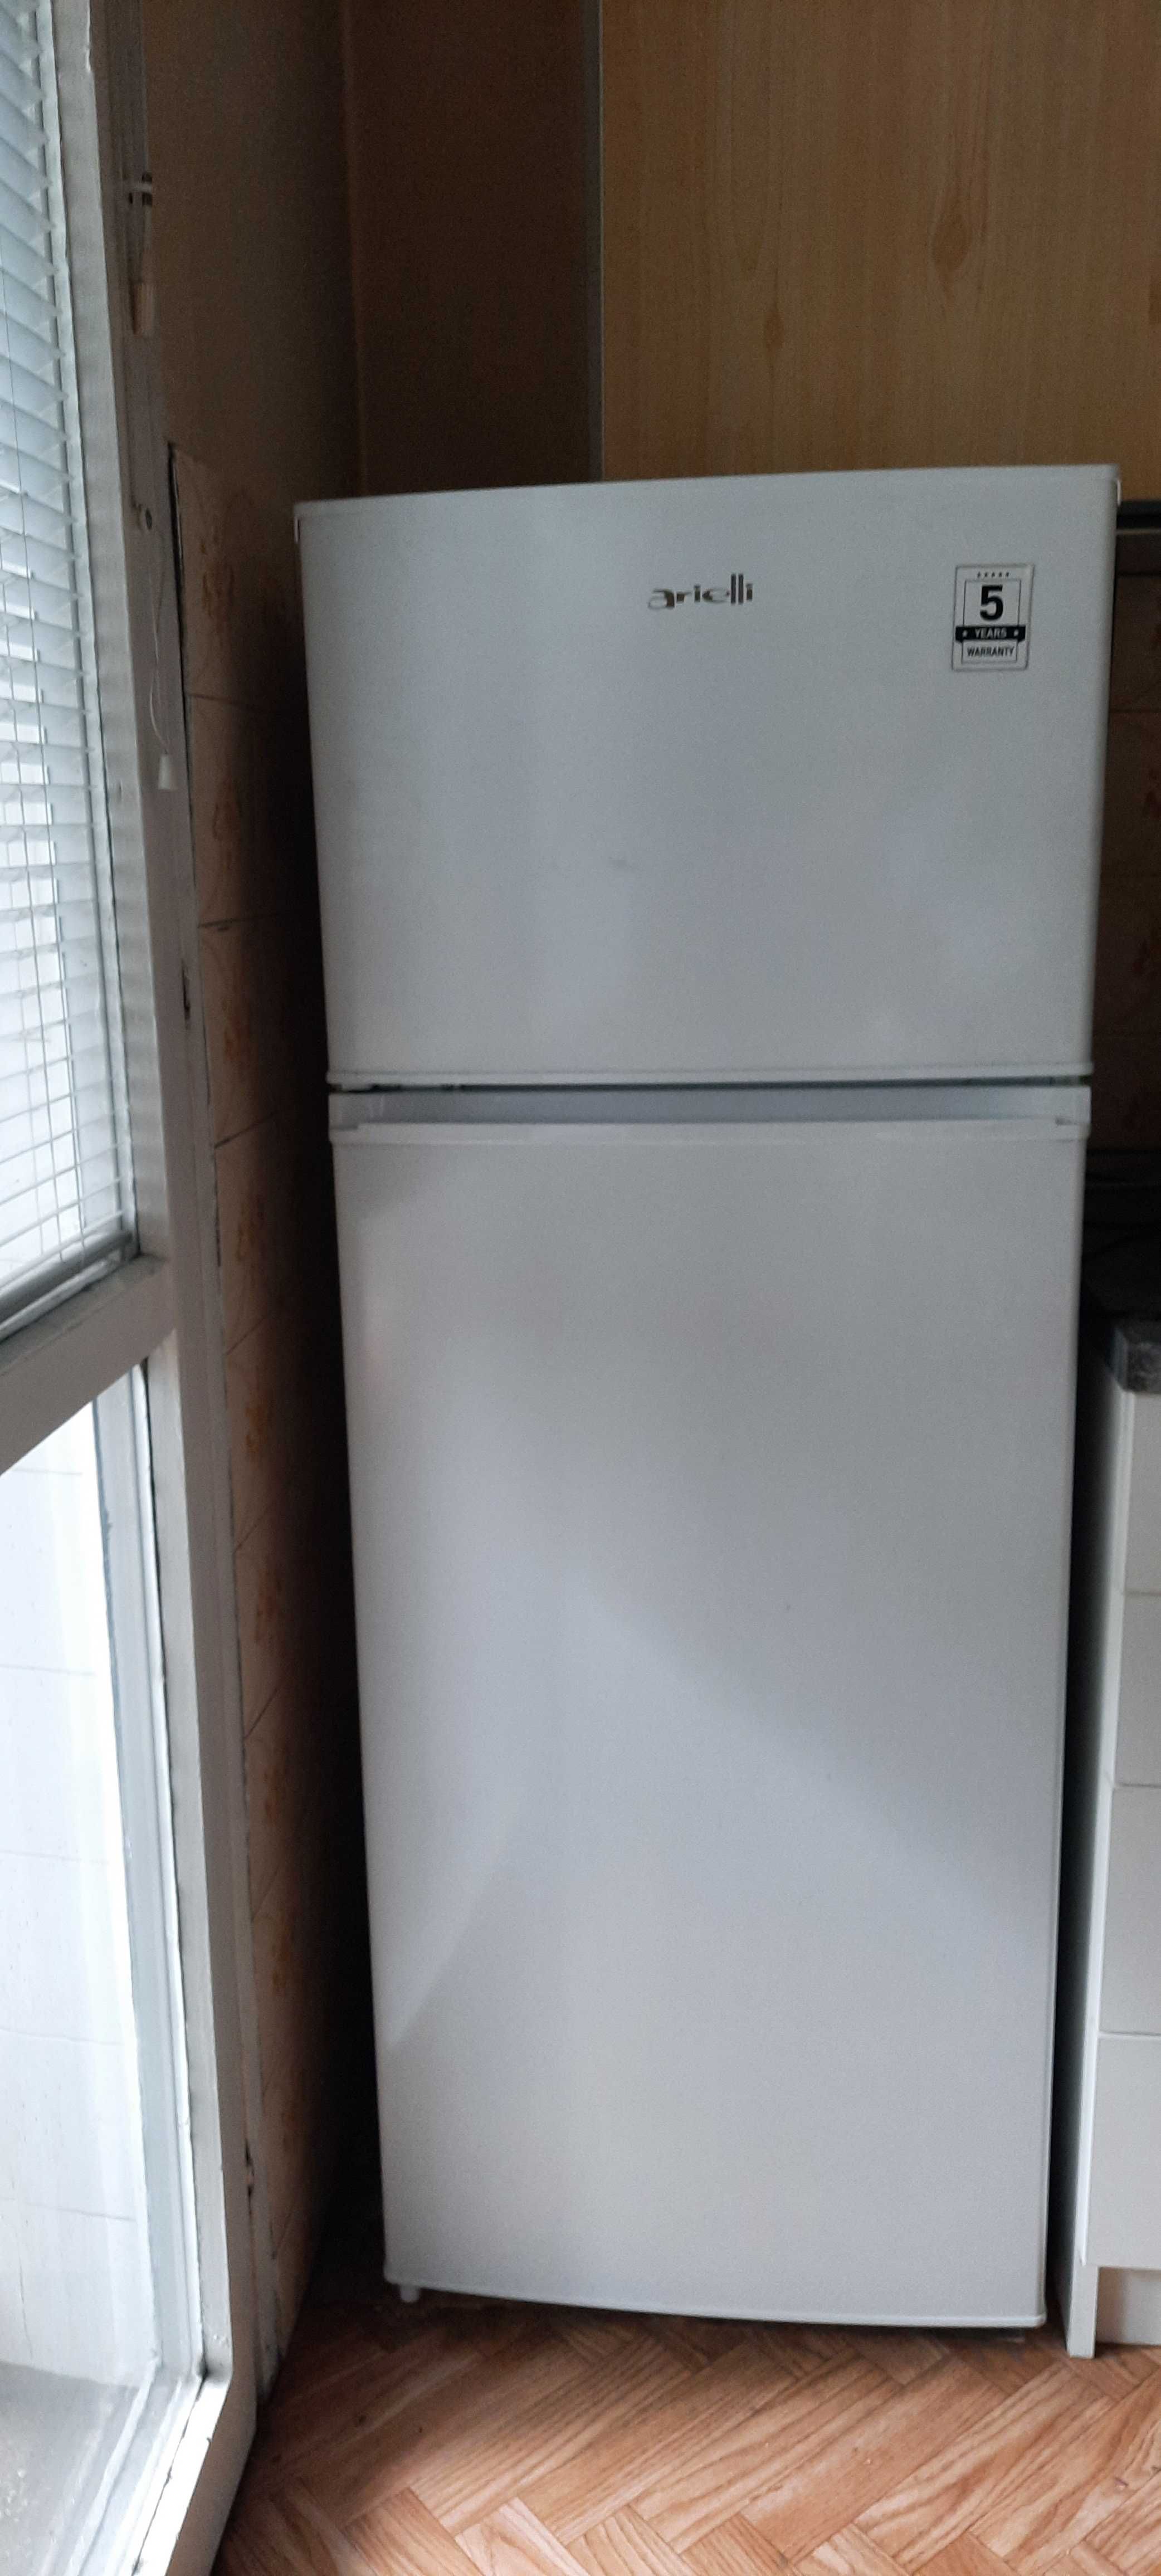 Хладилник с горна фризерна част, Arielli модел HD-273 FN, 207 л, A+